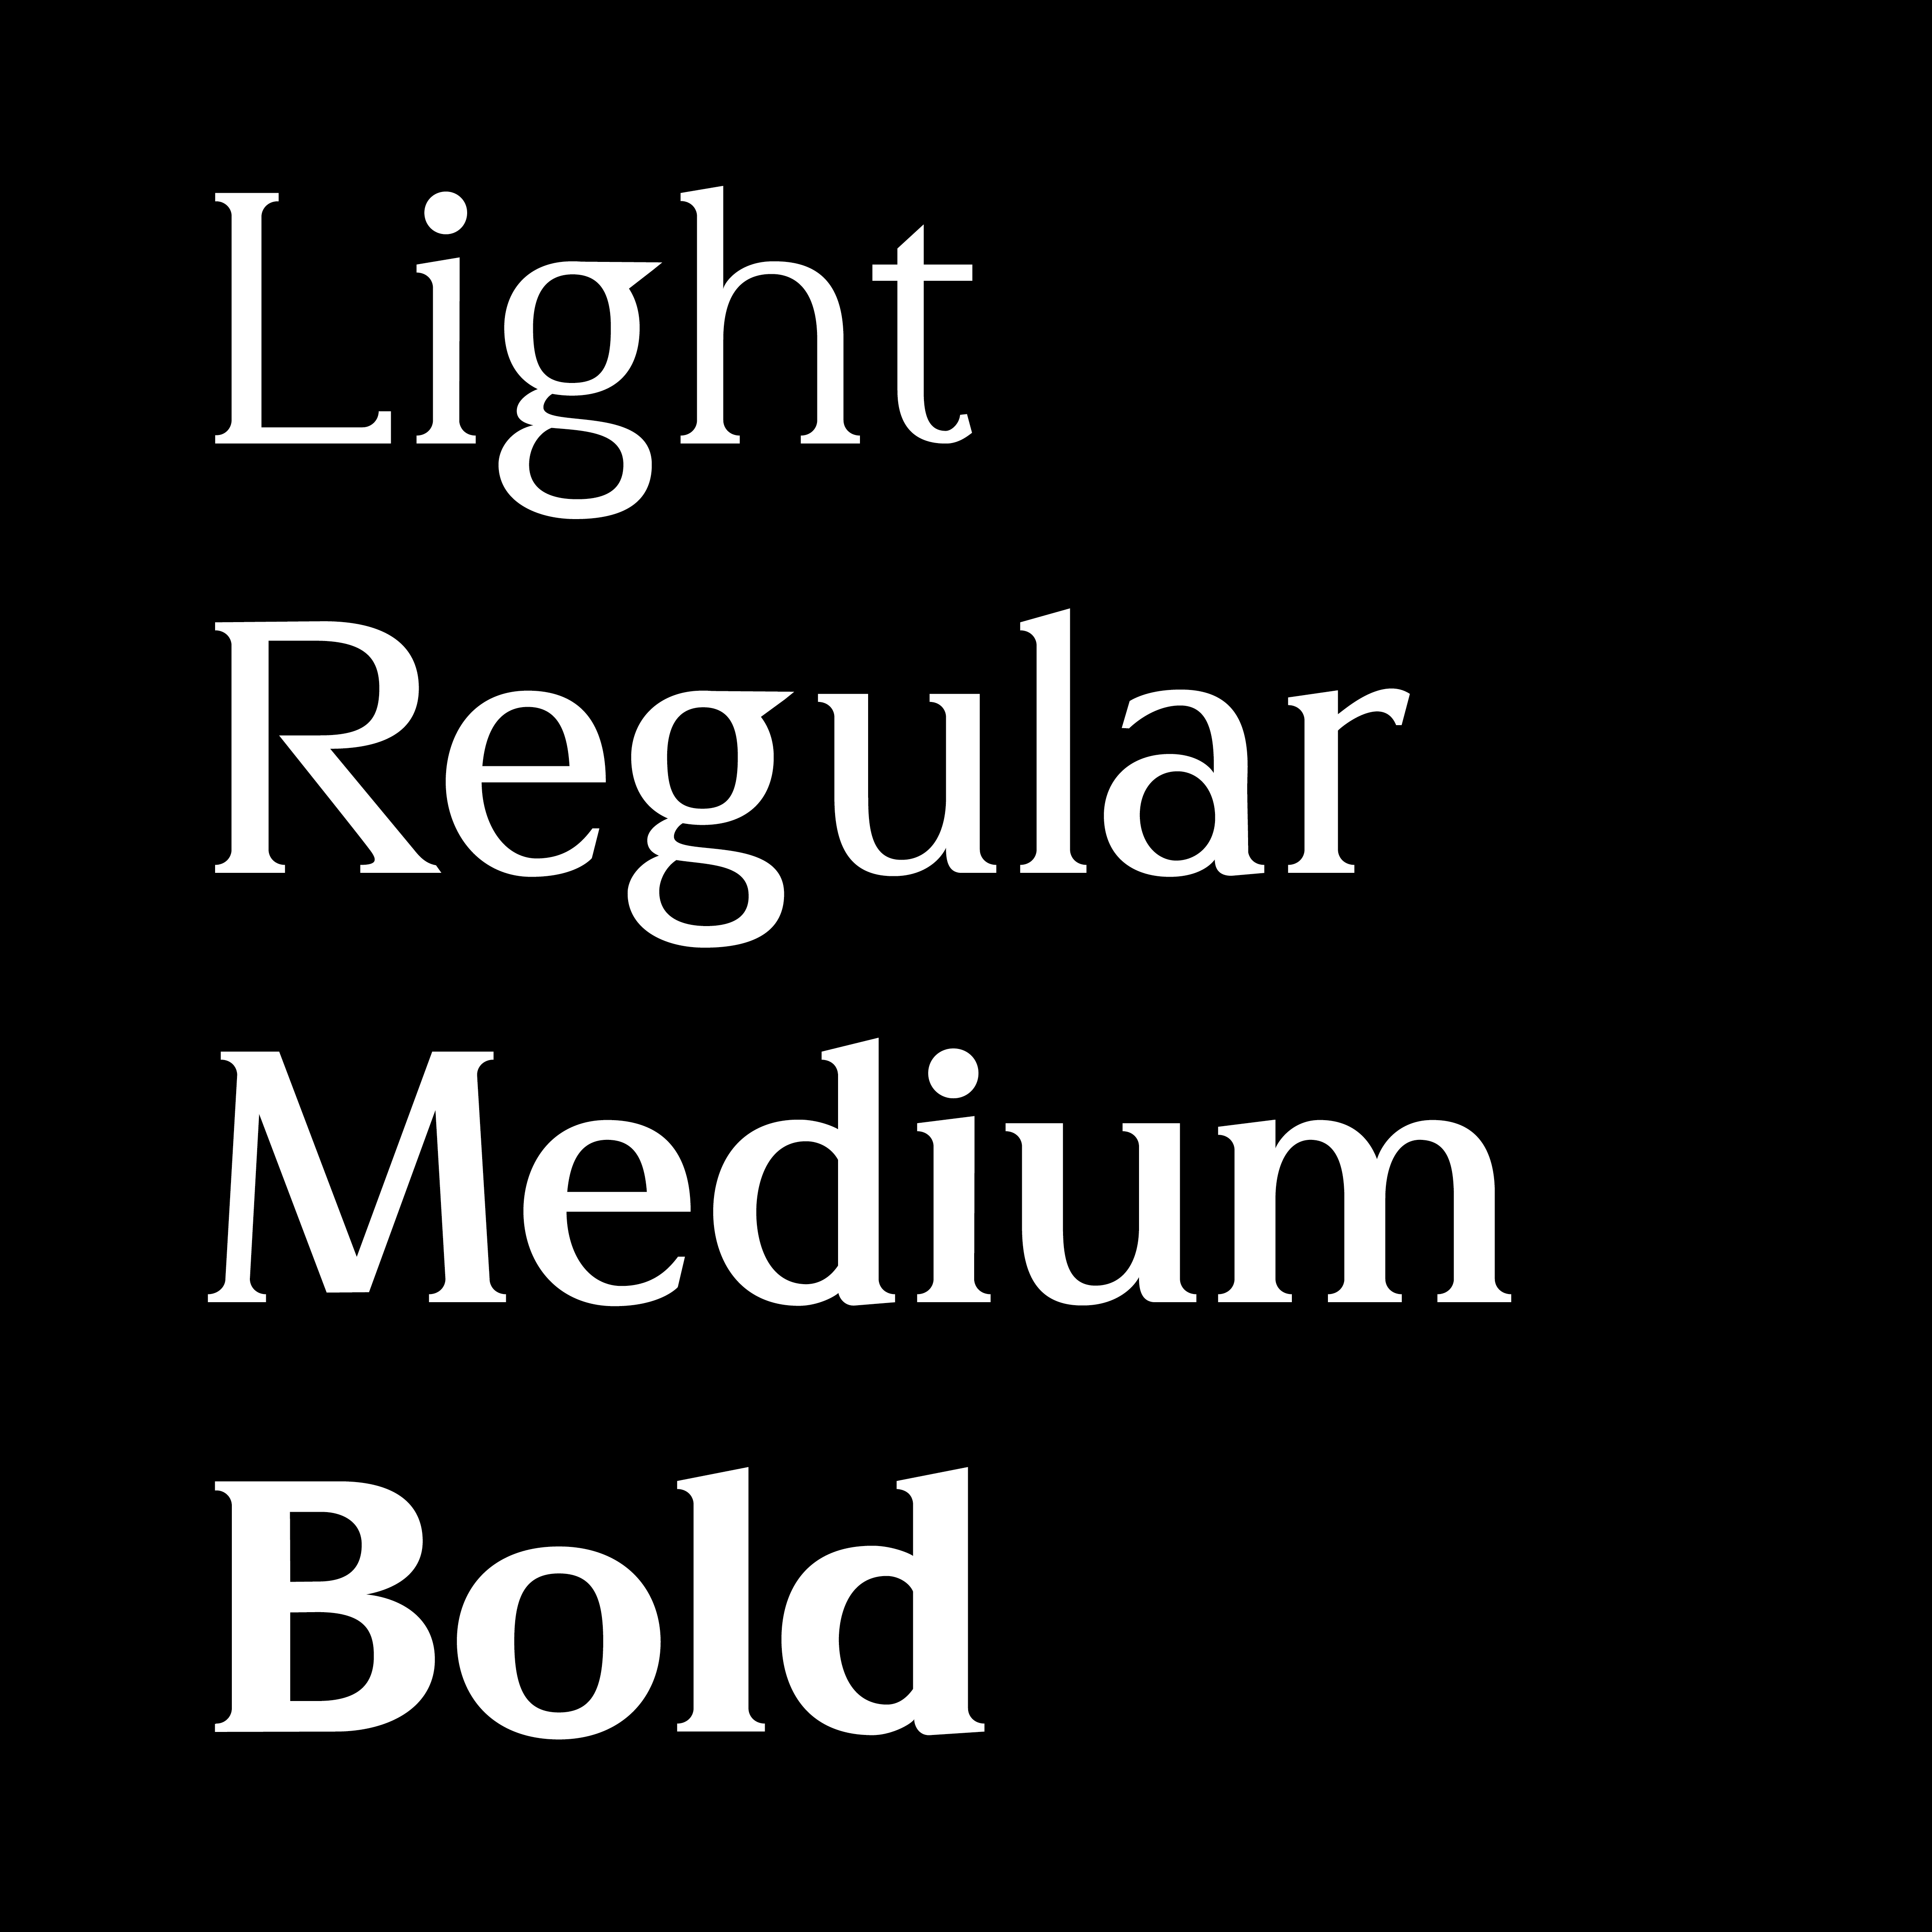 Light, Regular, Medium, Bold